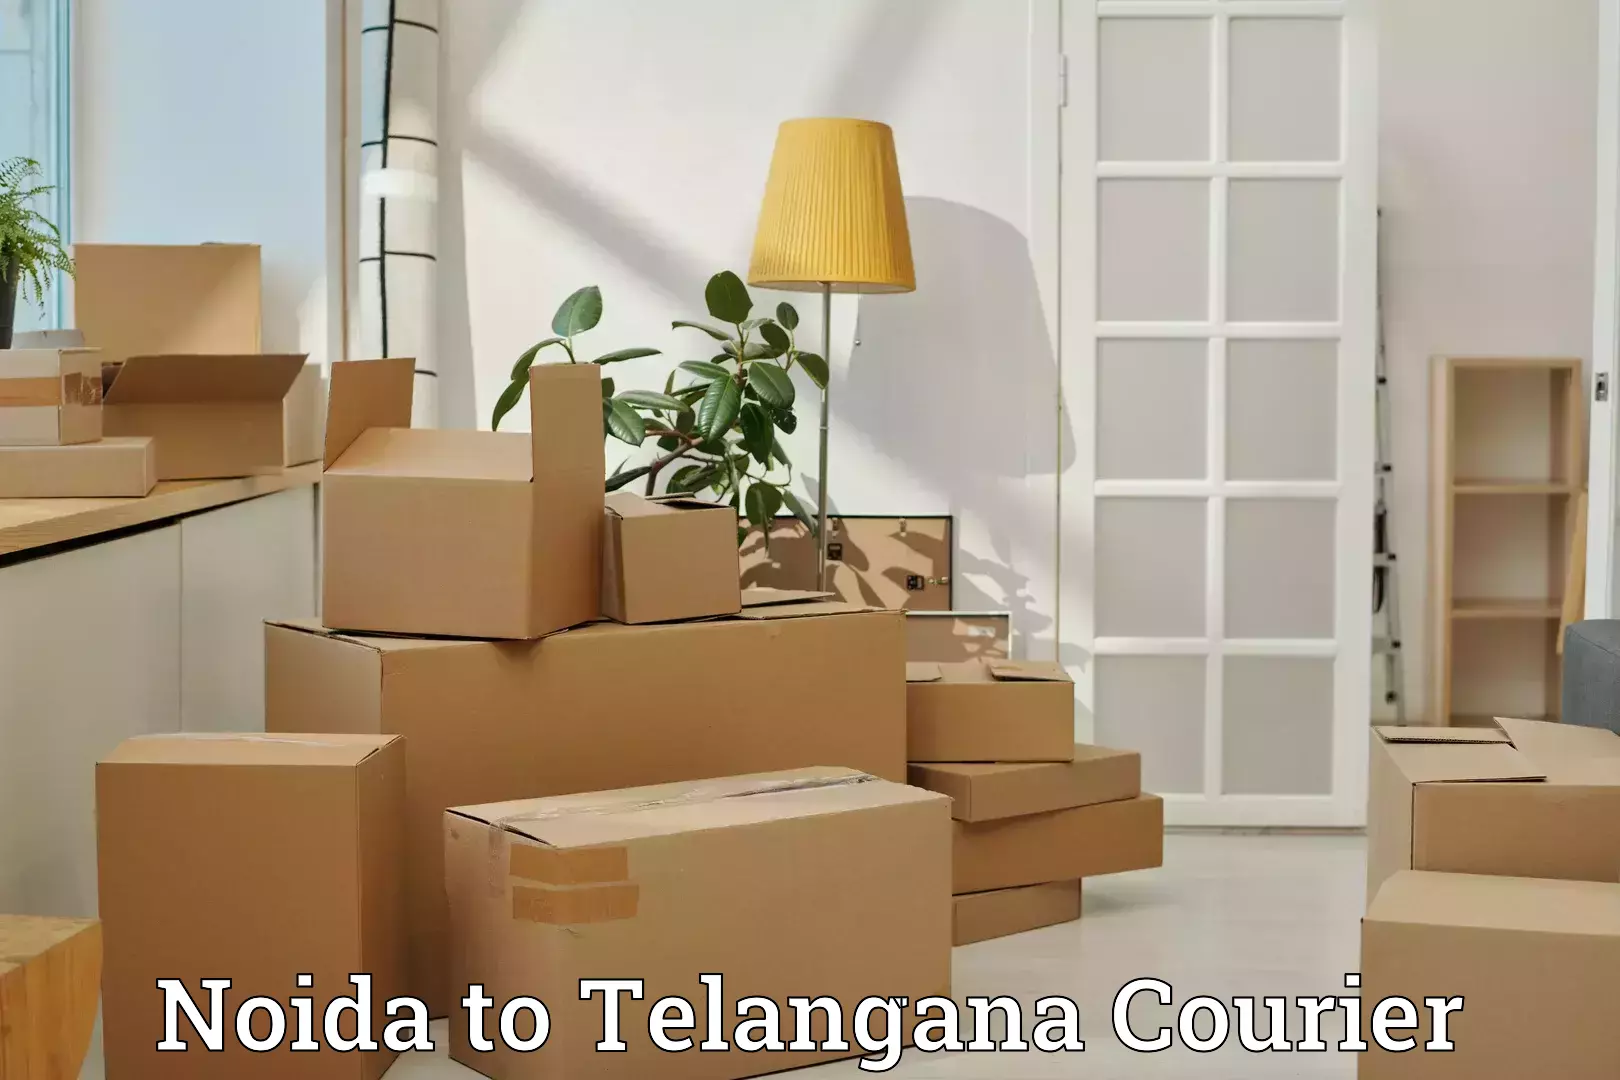 Luggage delivery network Noida to Karimnagar